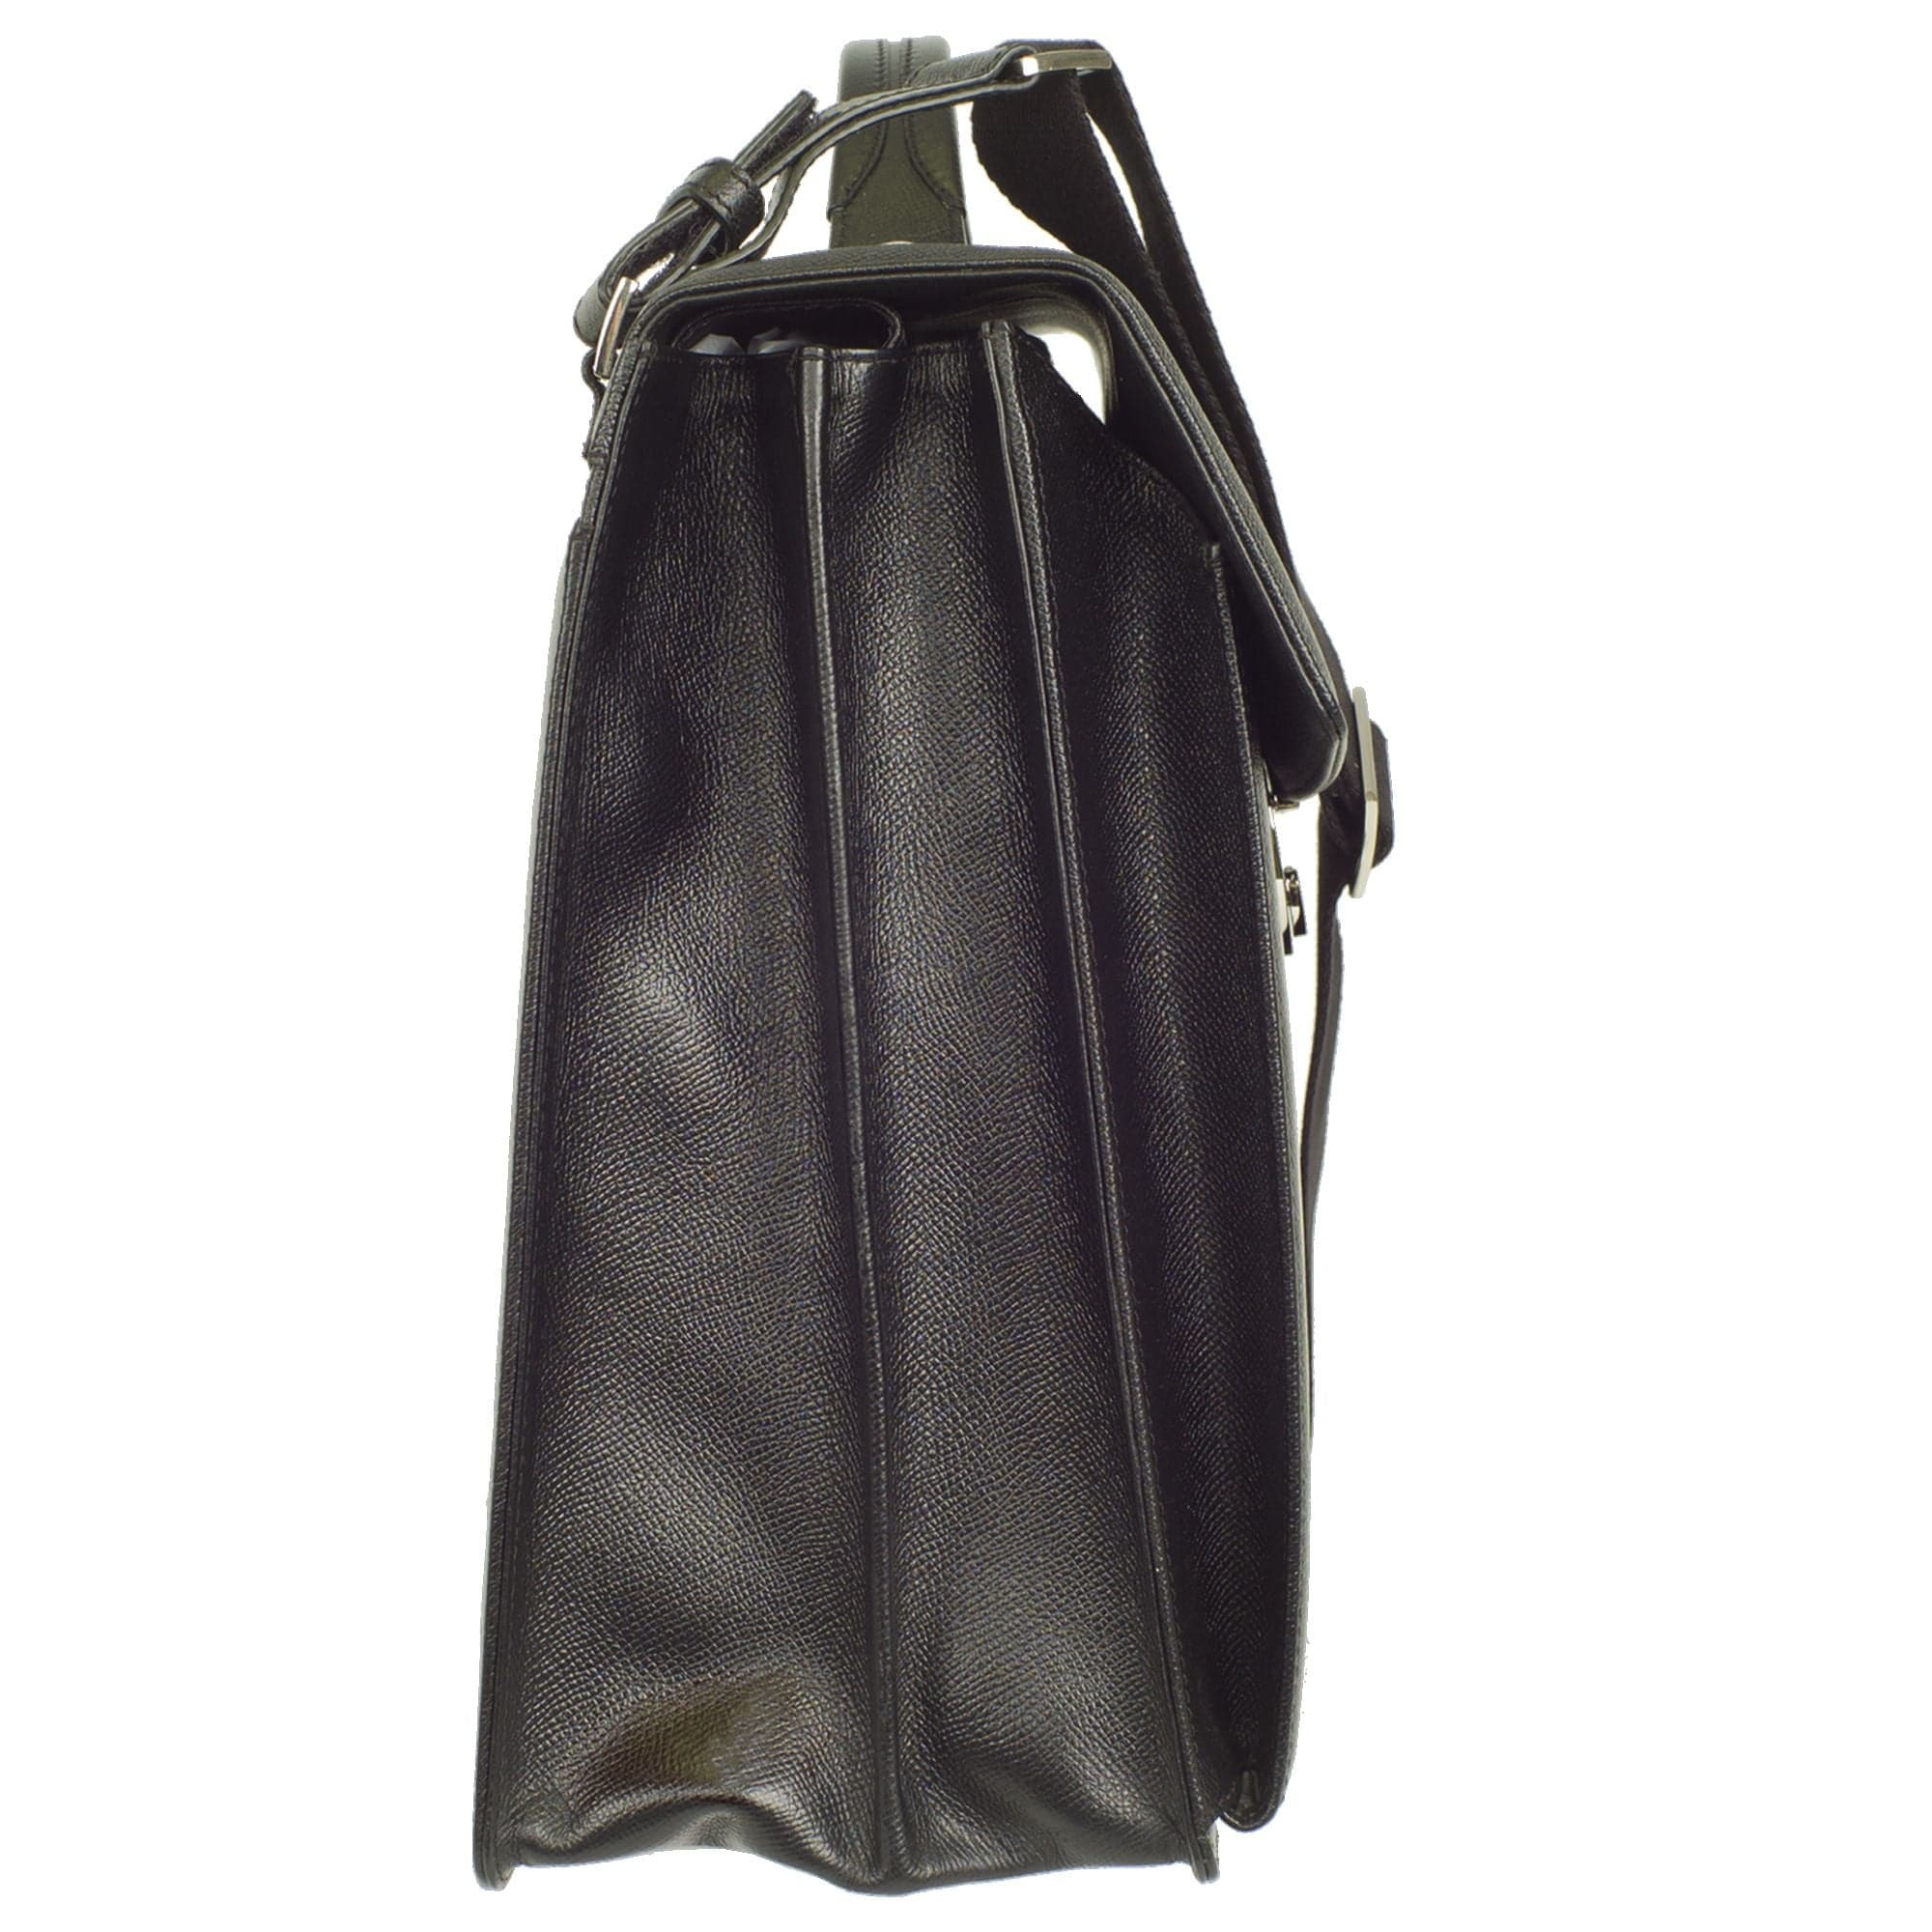 Konferenzmappe Aktentasche A4 geprägtes Leder schwarz mit Laptopfach - Corf Offermann